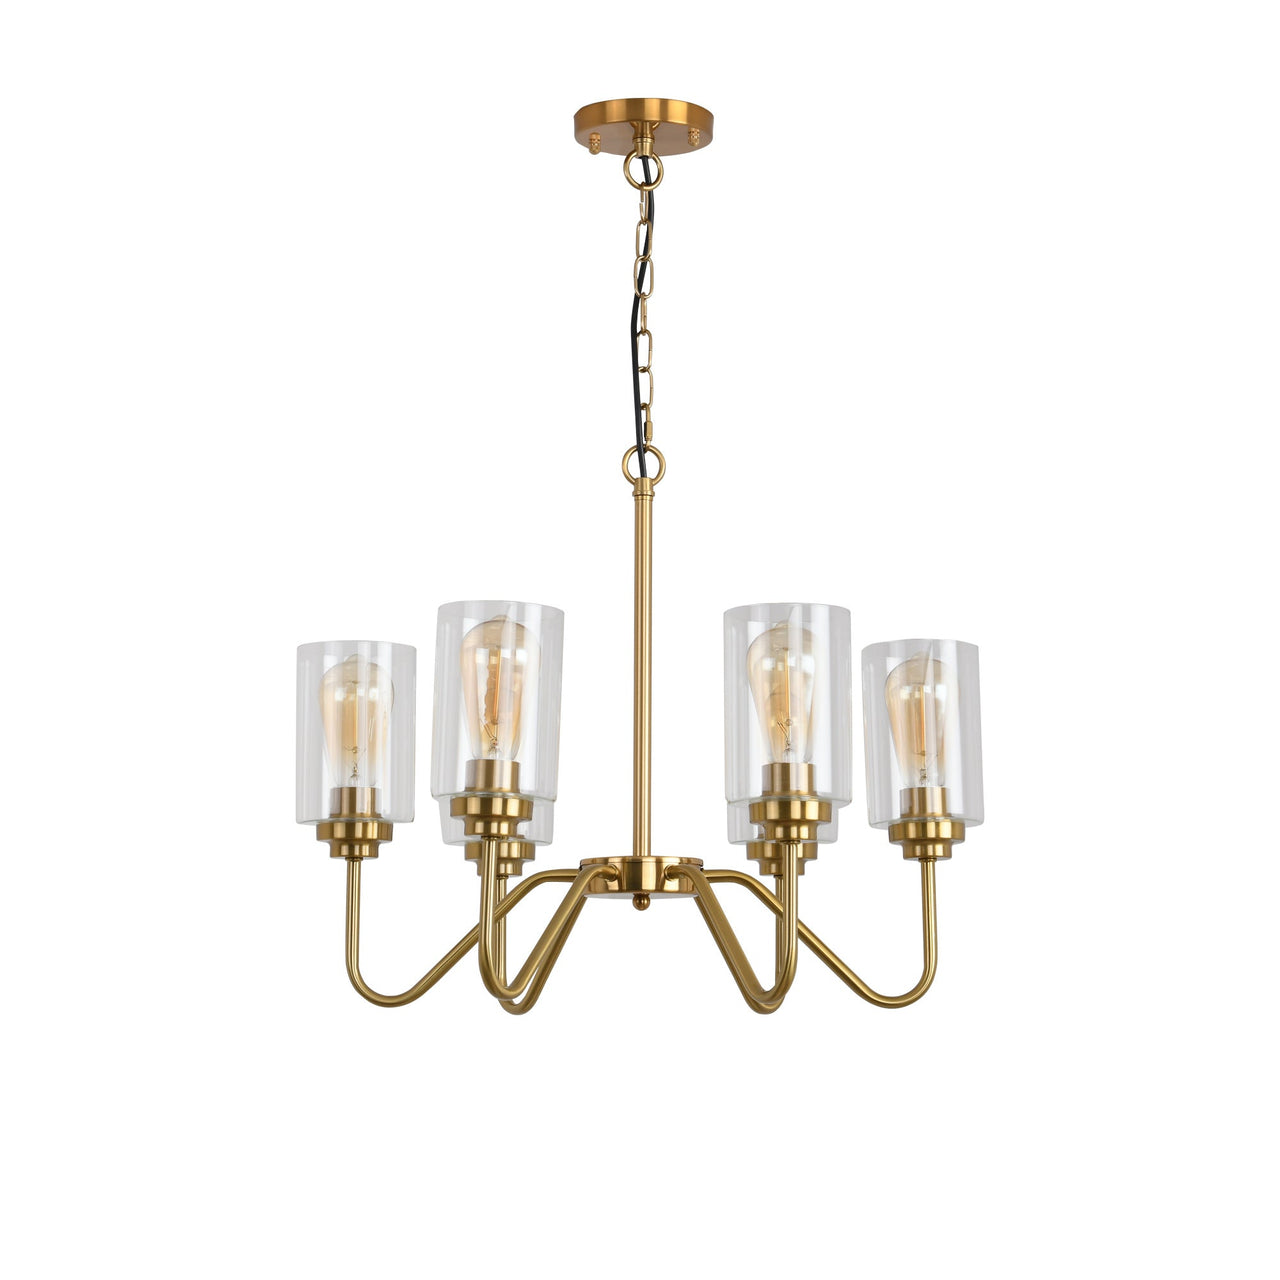 E26 glass chandelier iron golden 6 bulbs - Casatrail.com